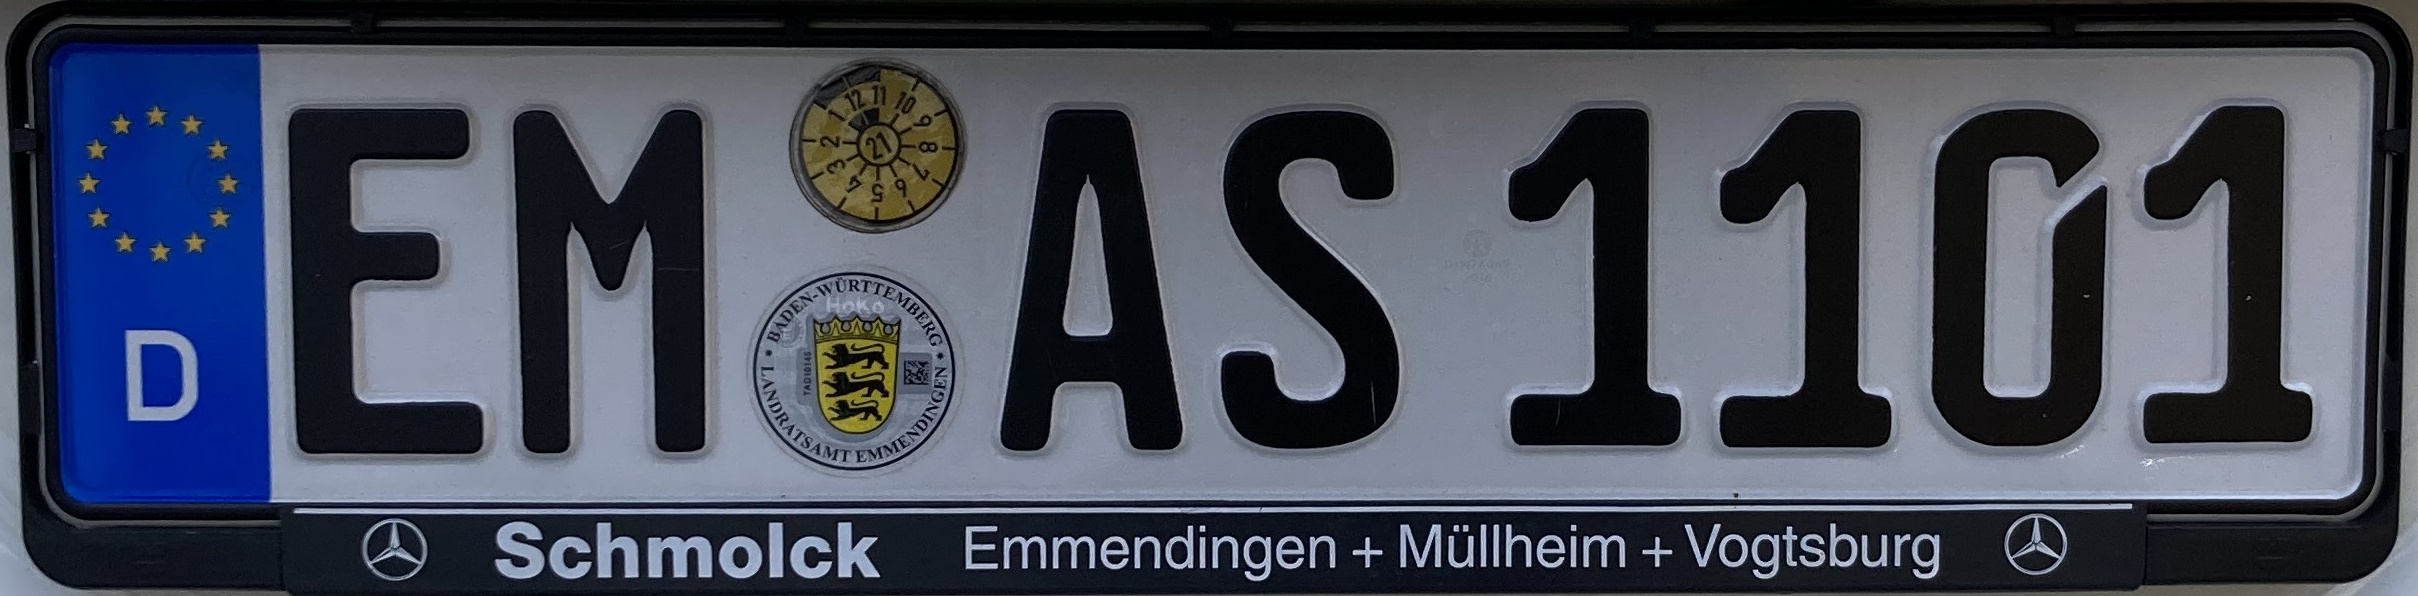 Registrační značky Německo - EM - Emmendingen, foto: www.podalnici.cz